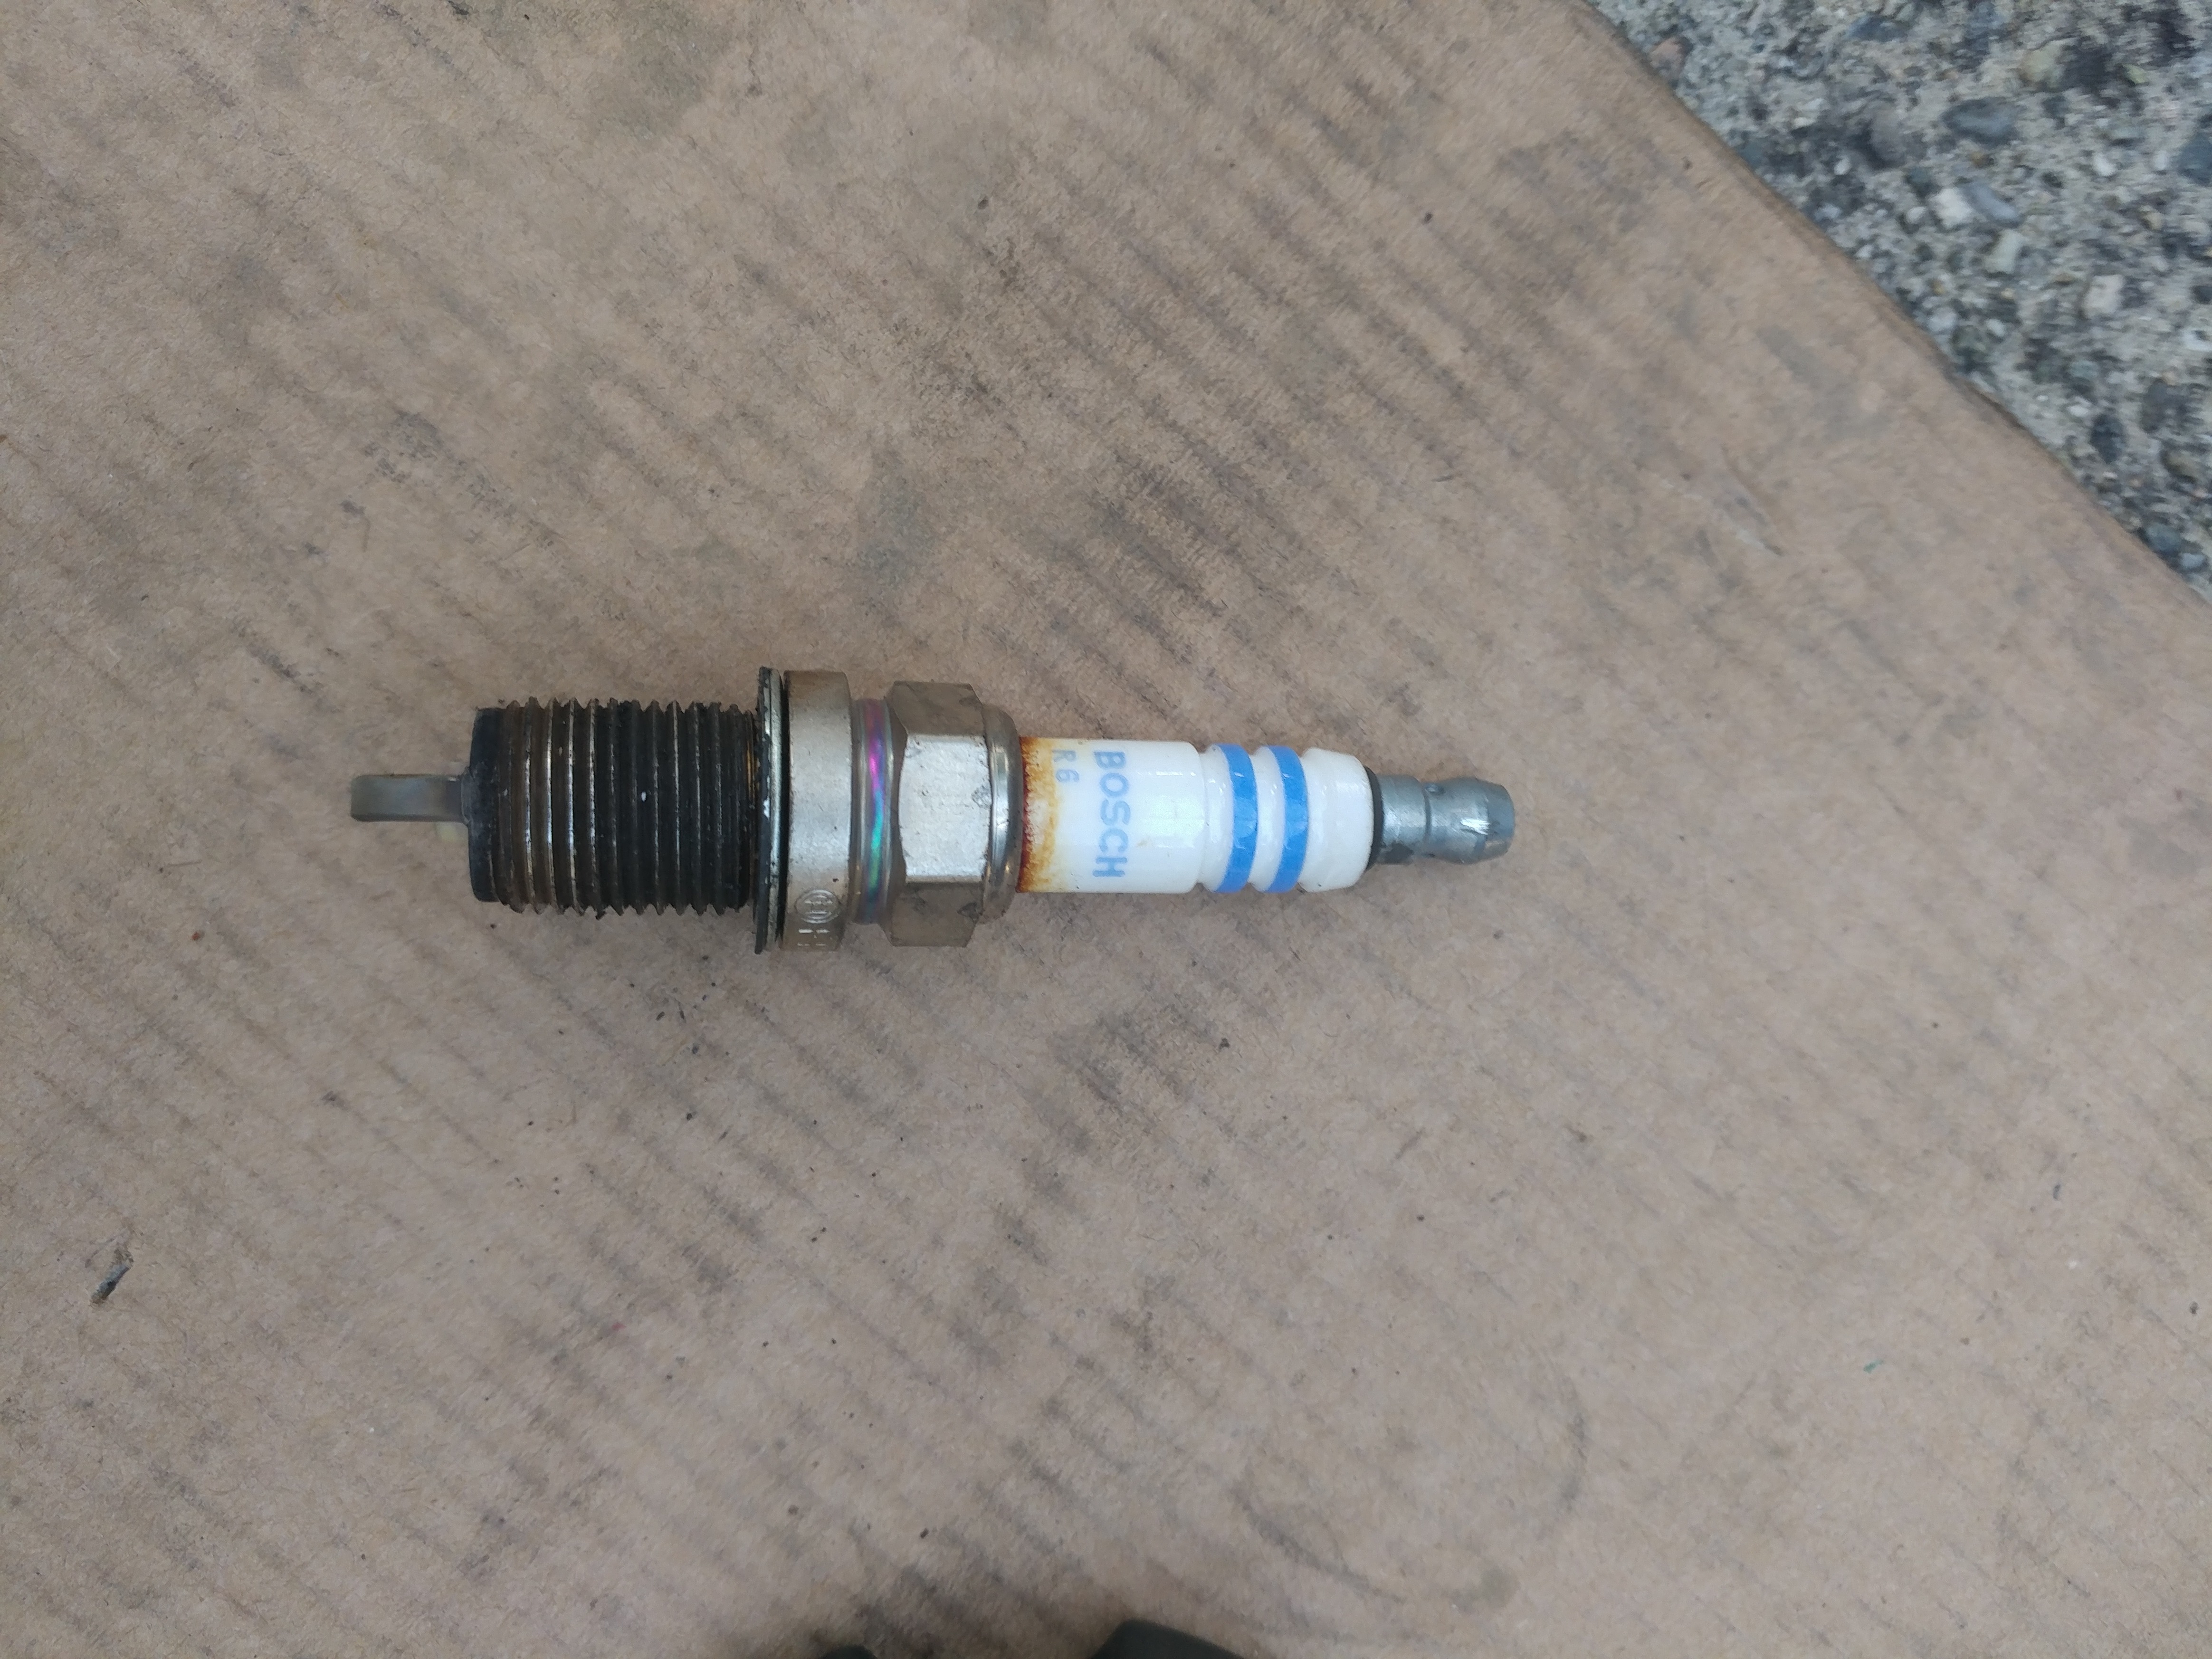 old spark plug